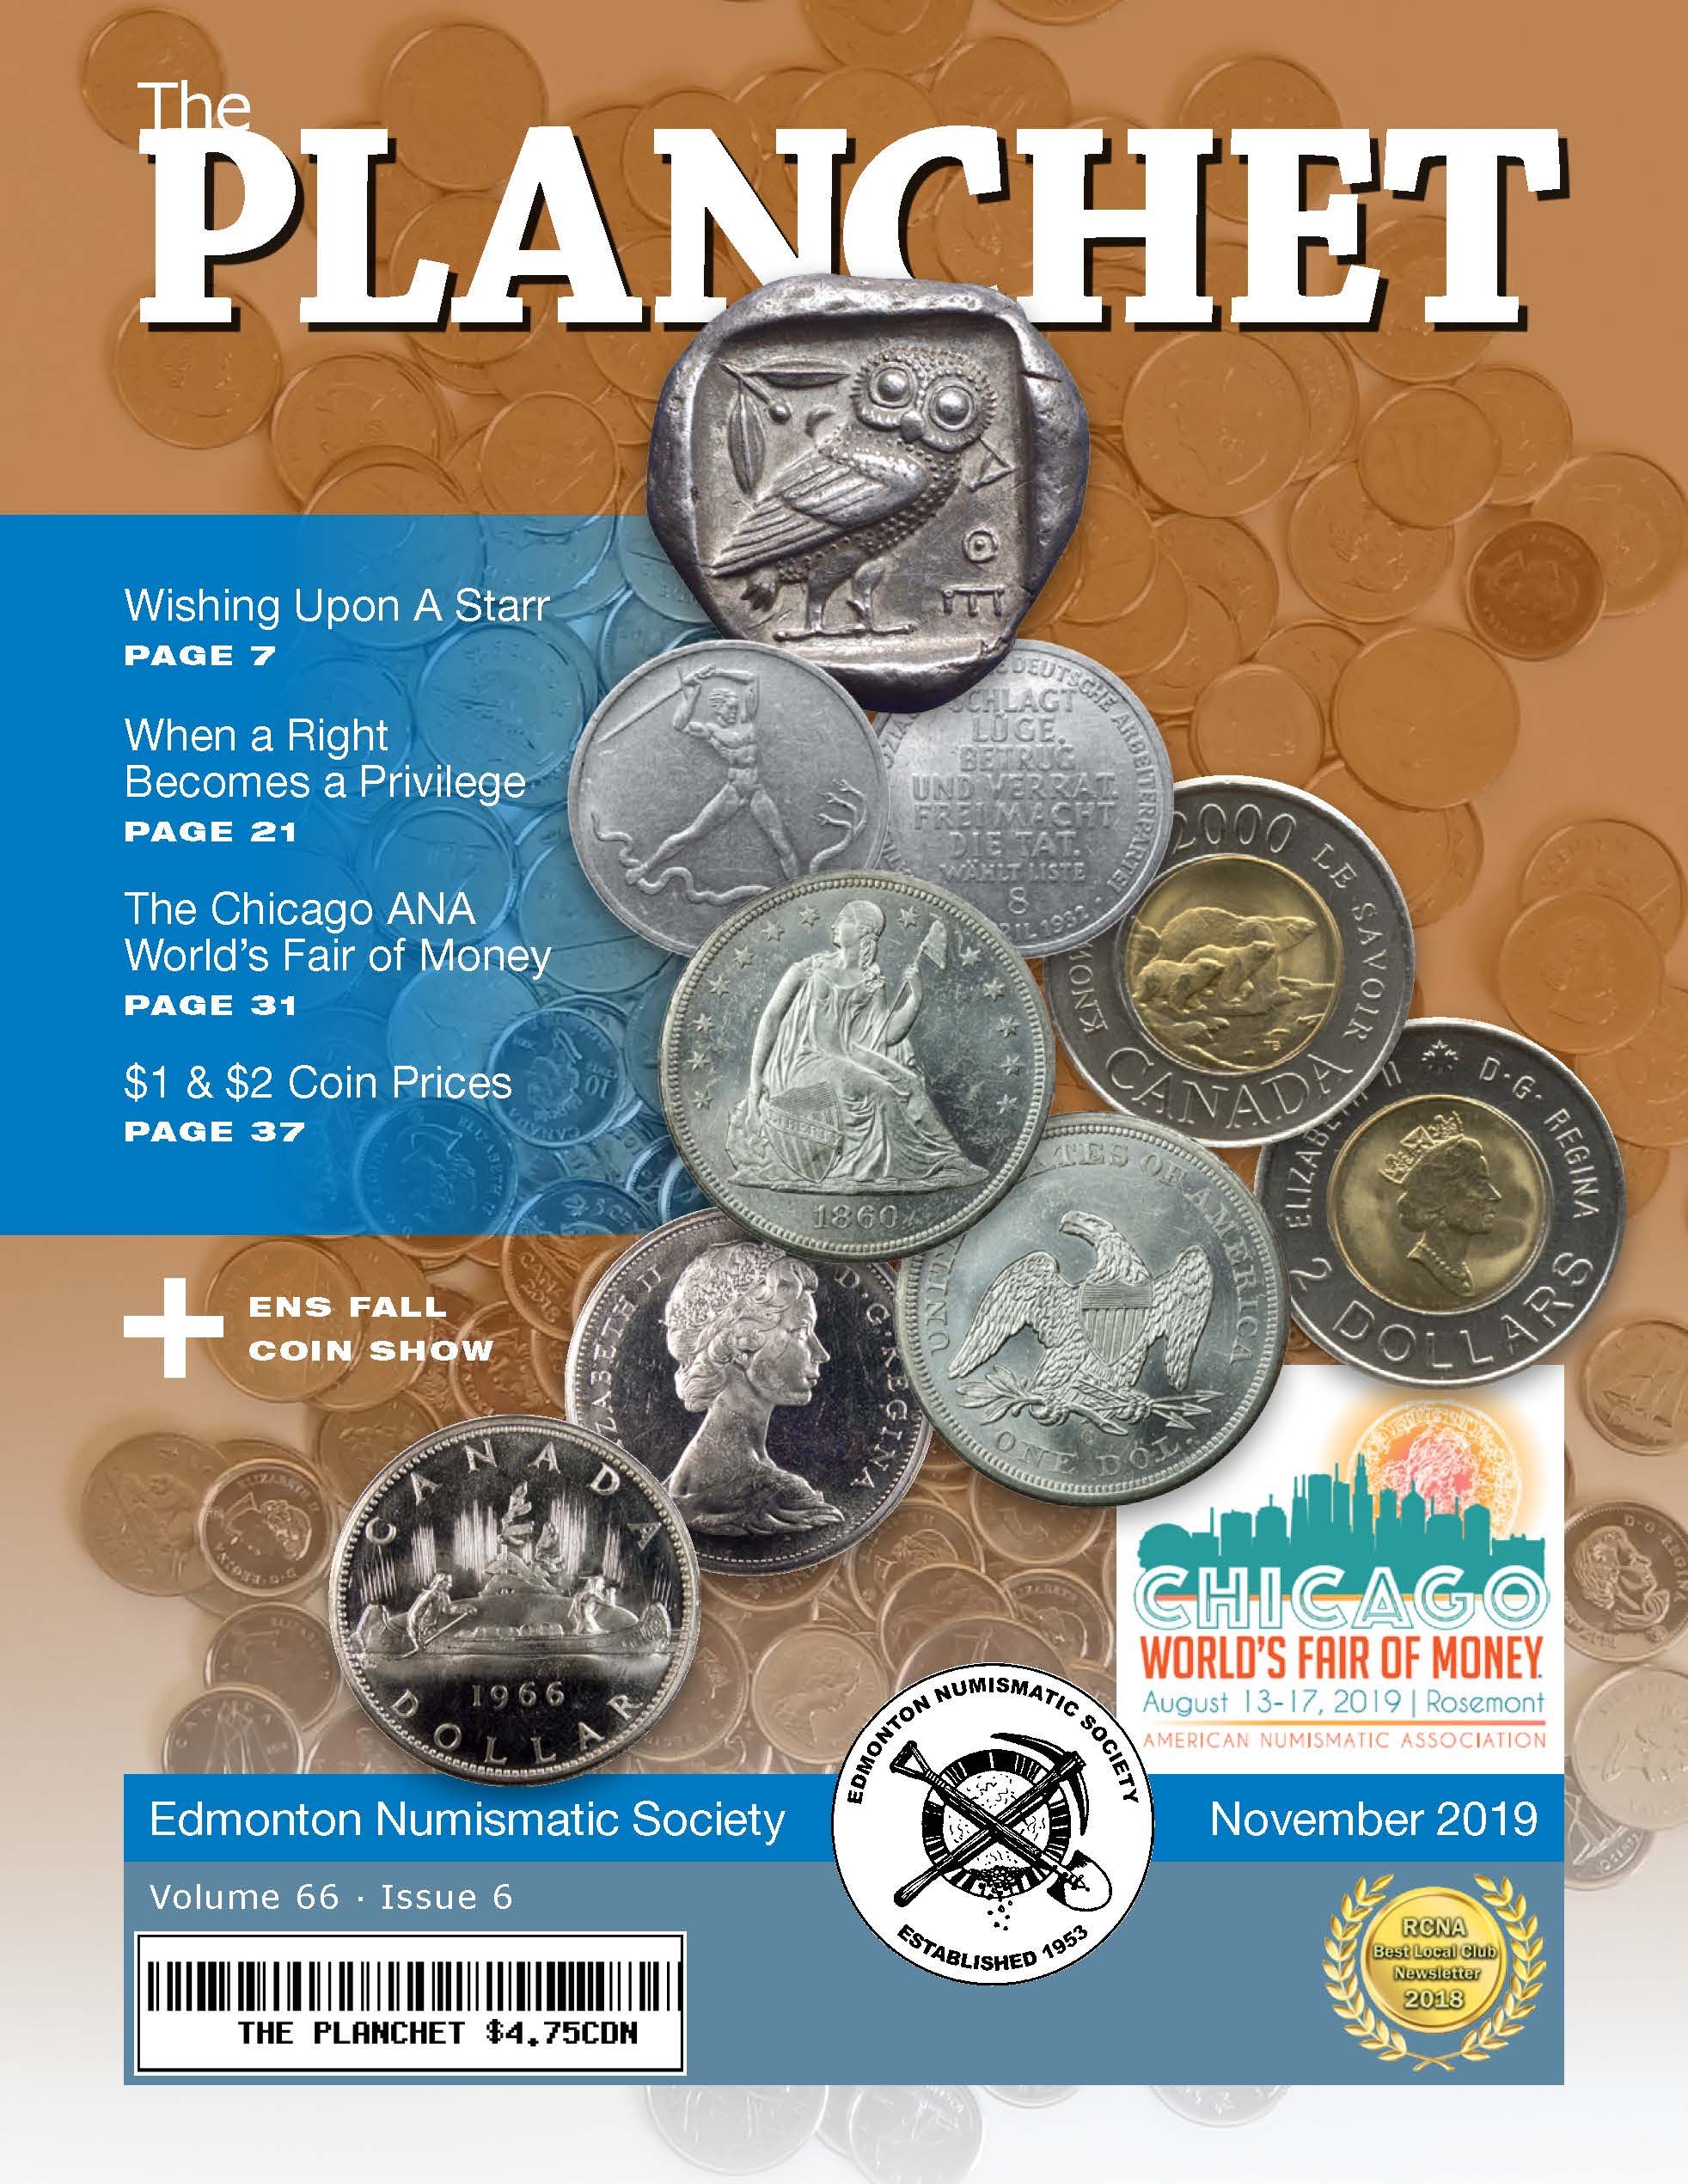 The Planchet Numismatic Magazine: November 2019